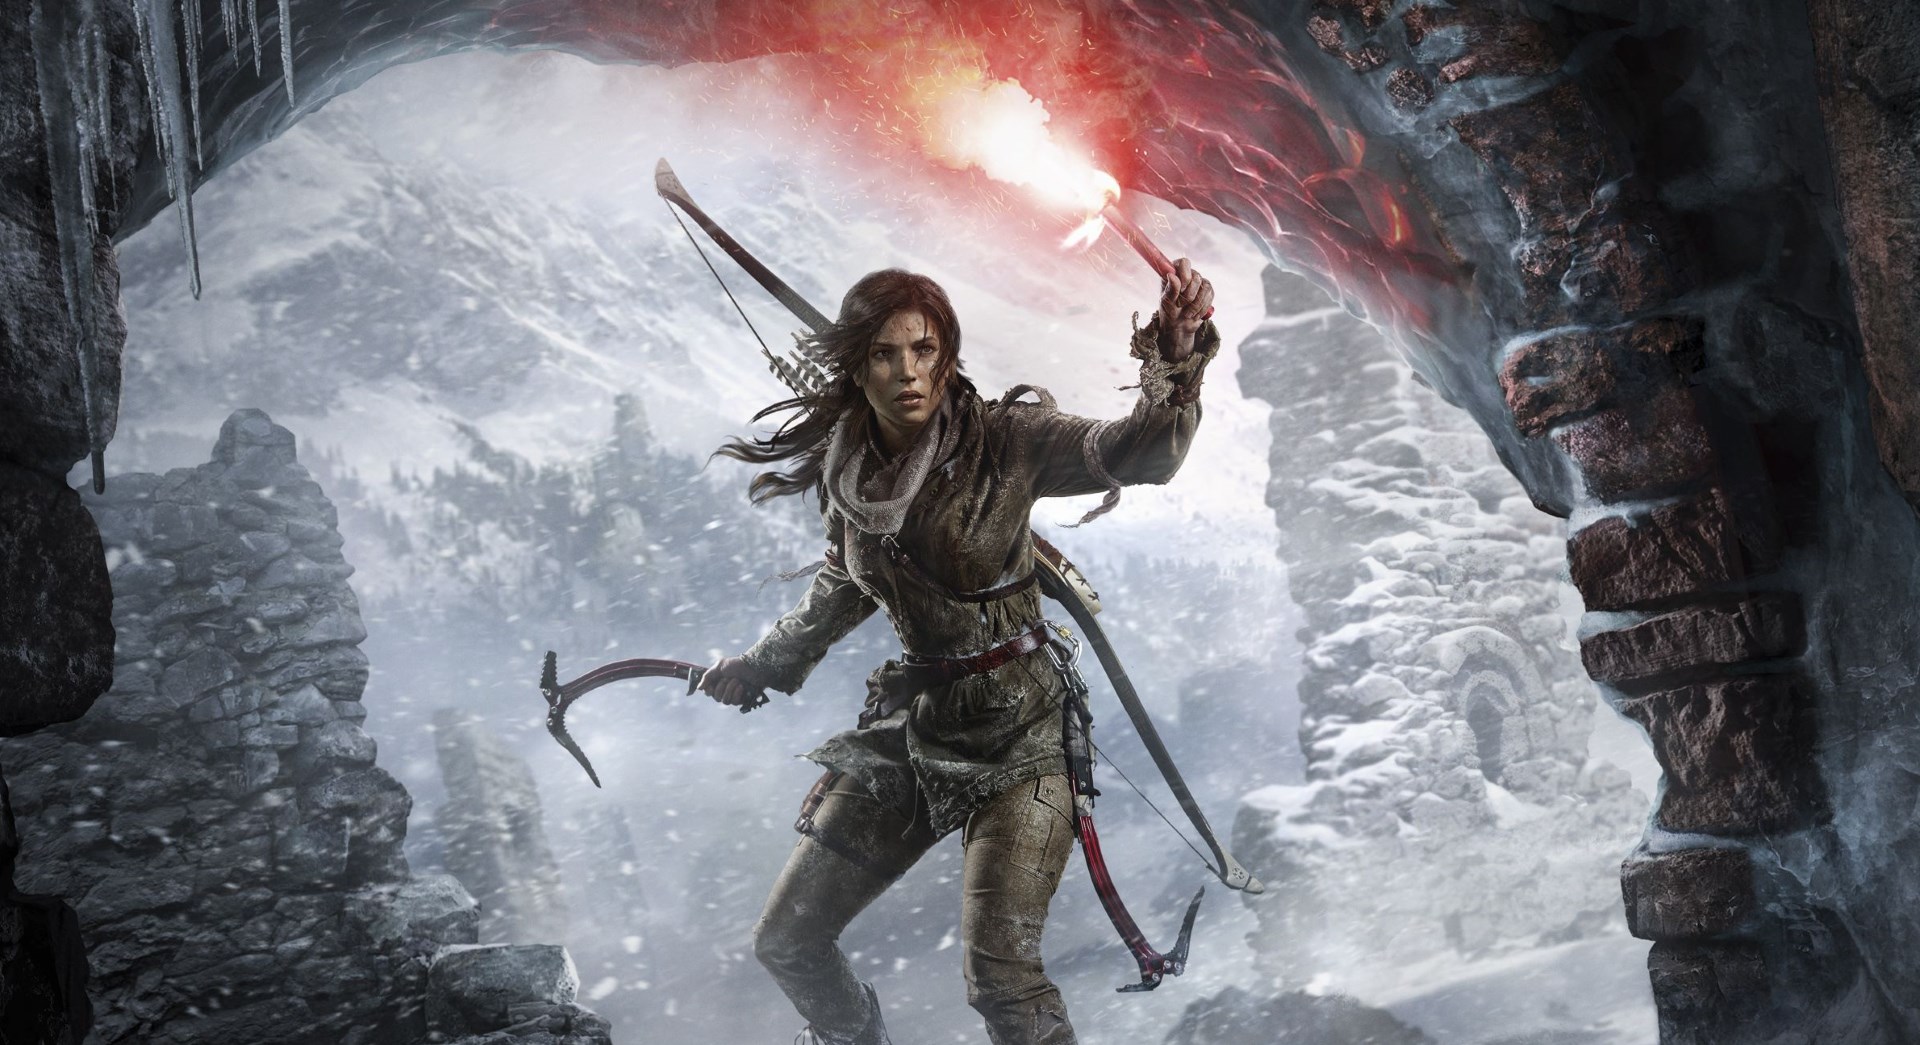  Fortnite leak: a Tomb Raider skin may be coming 